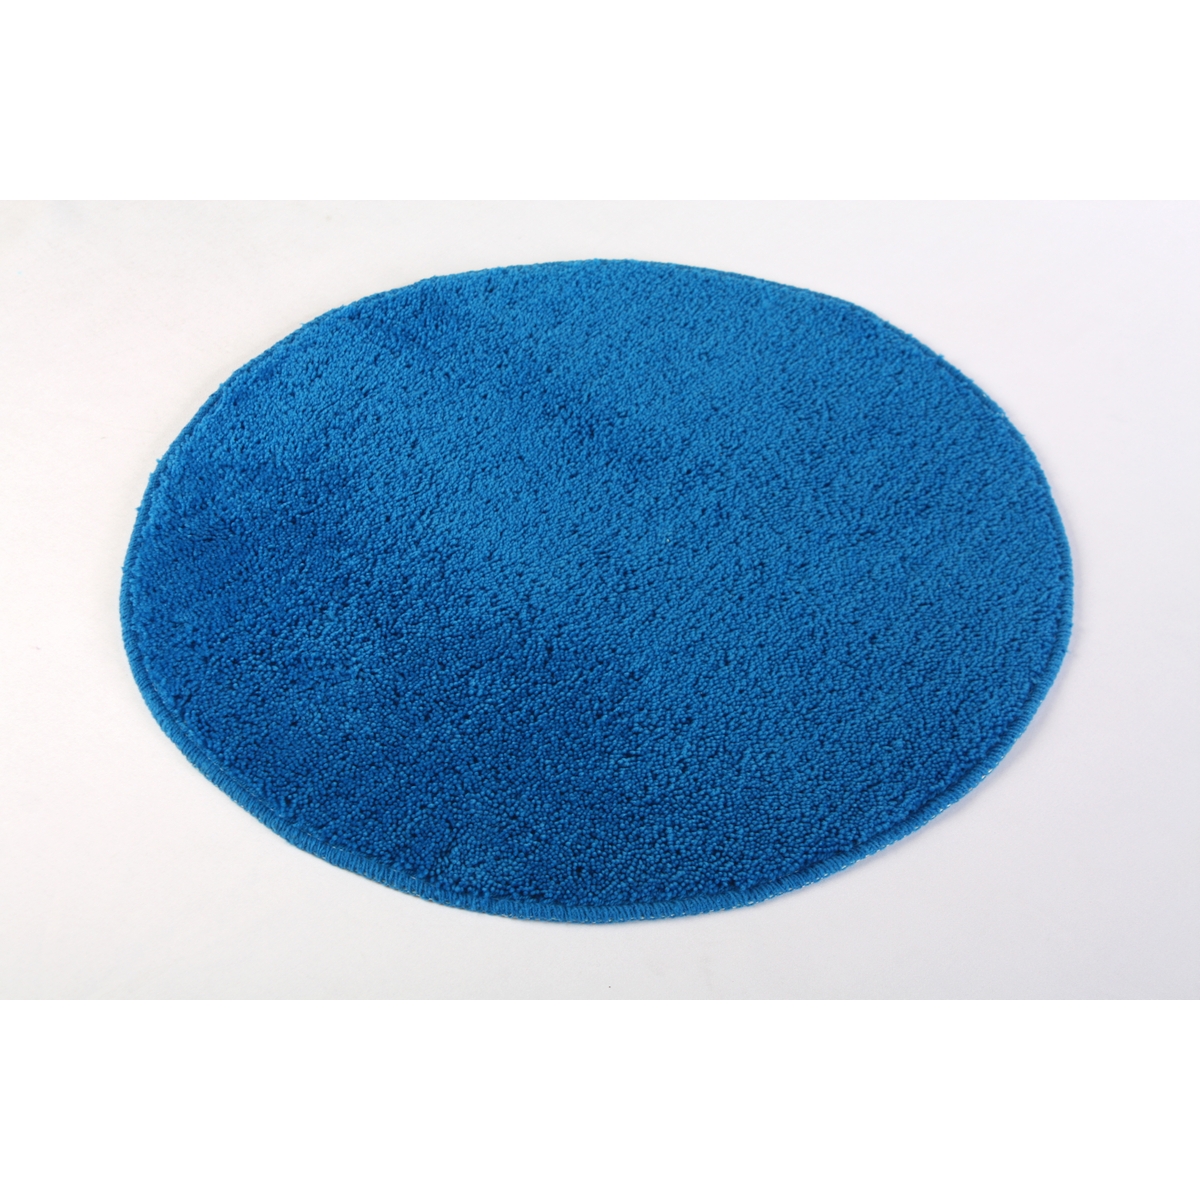 Коврик для ванной Round синий, 60 x 60 см (Welle 940022BL)